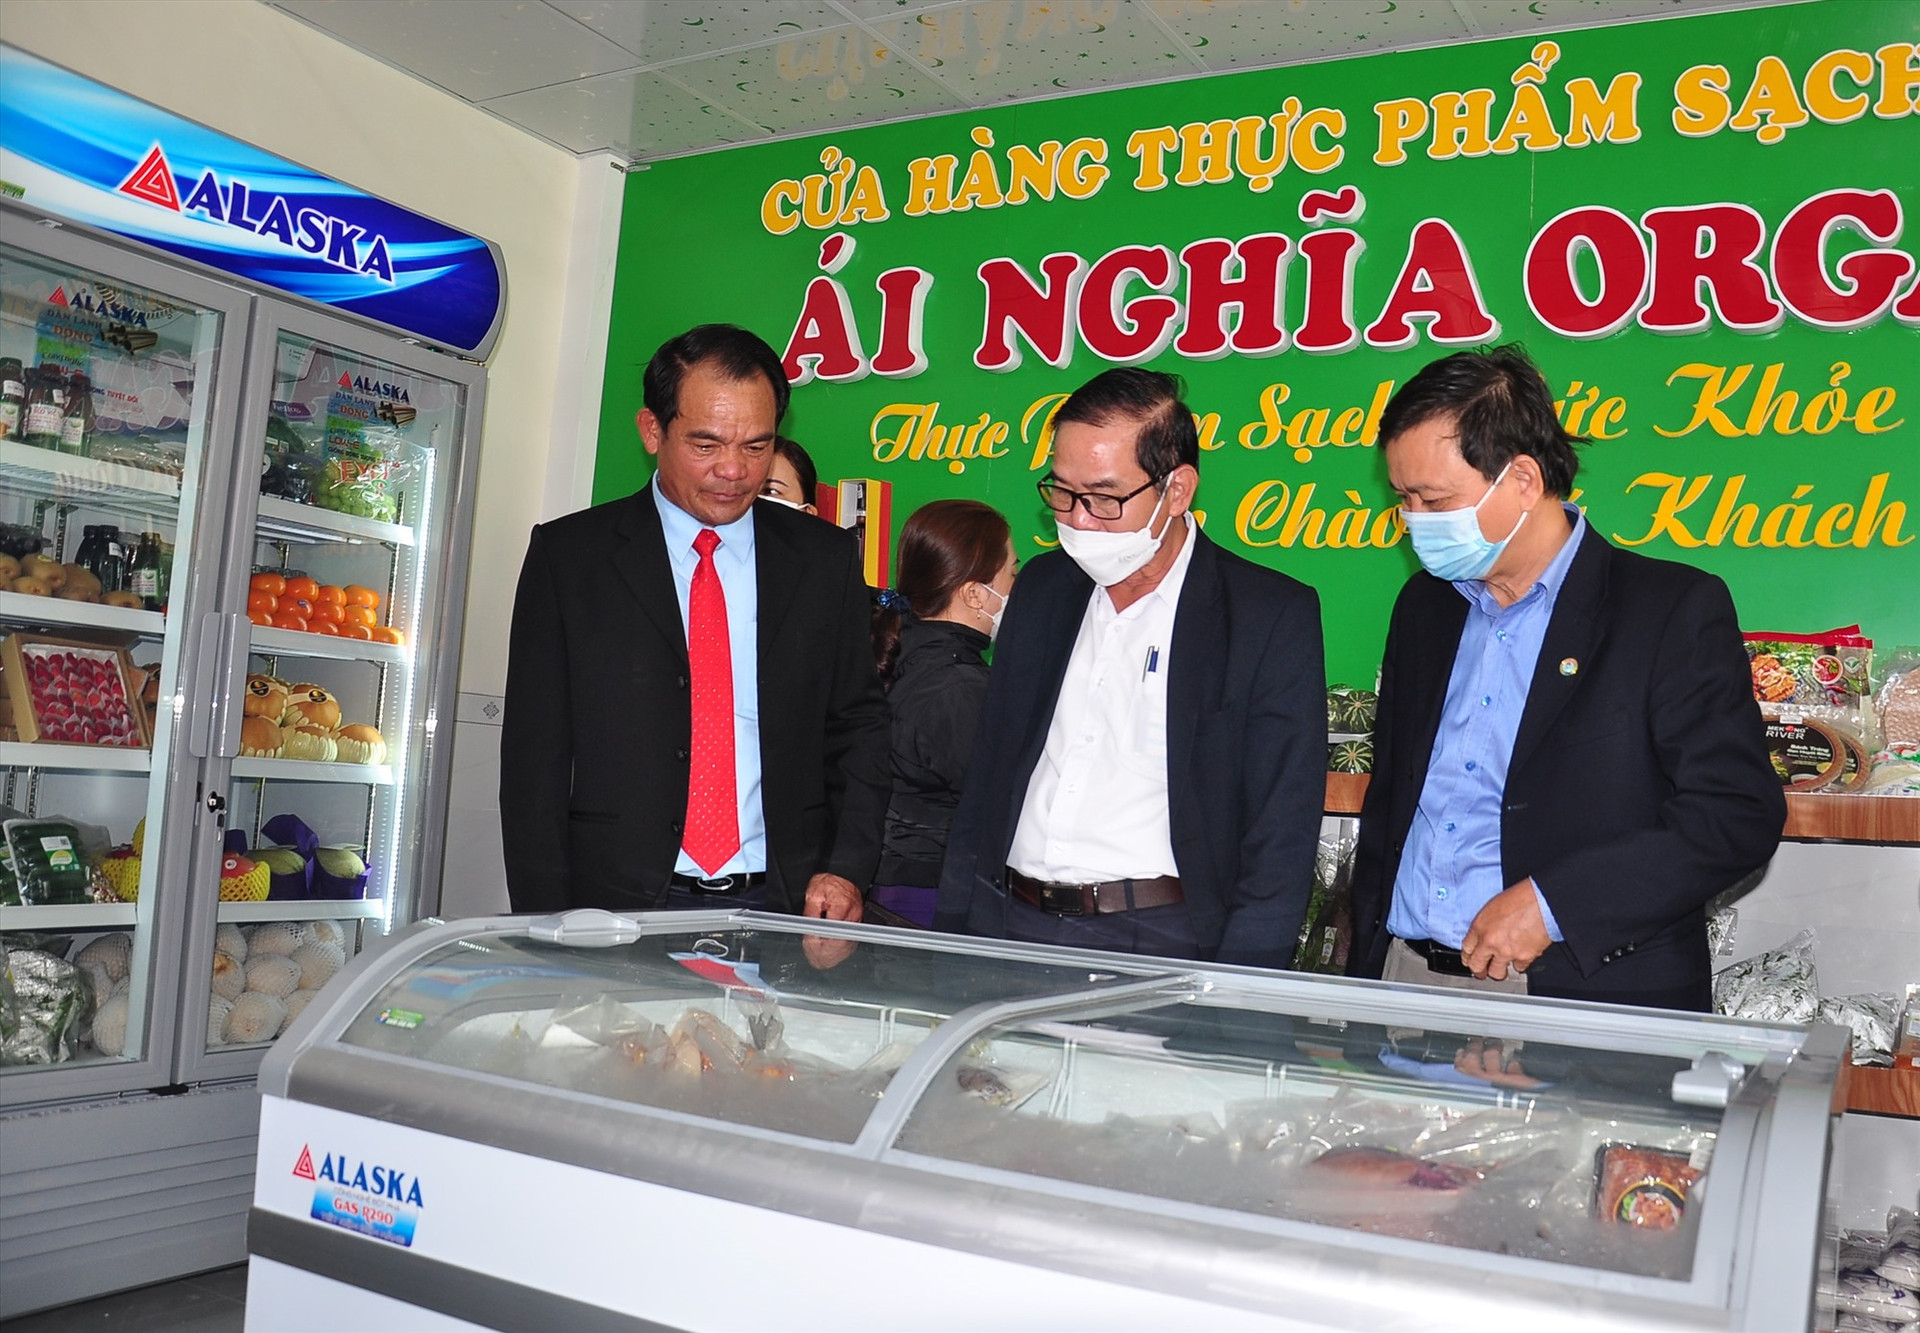 HTX Nông nghiệp Ái Nghĩa (Đại Lộc) vừa khai trương cửa hàng thực phẩm sạch Ái Nghĩa Organic. Ảnh: N.Đ